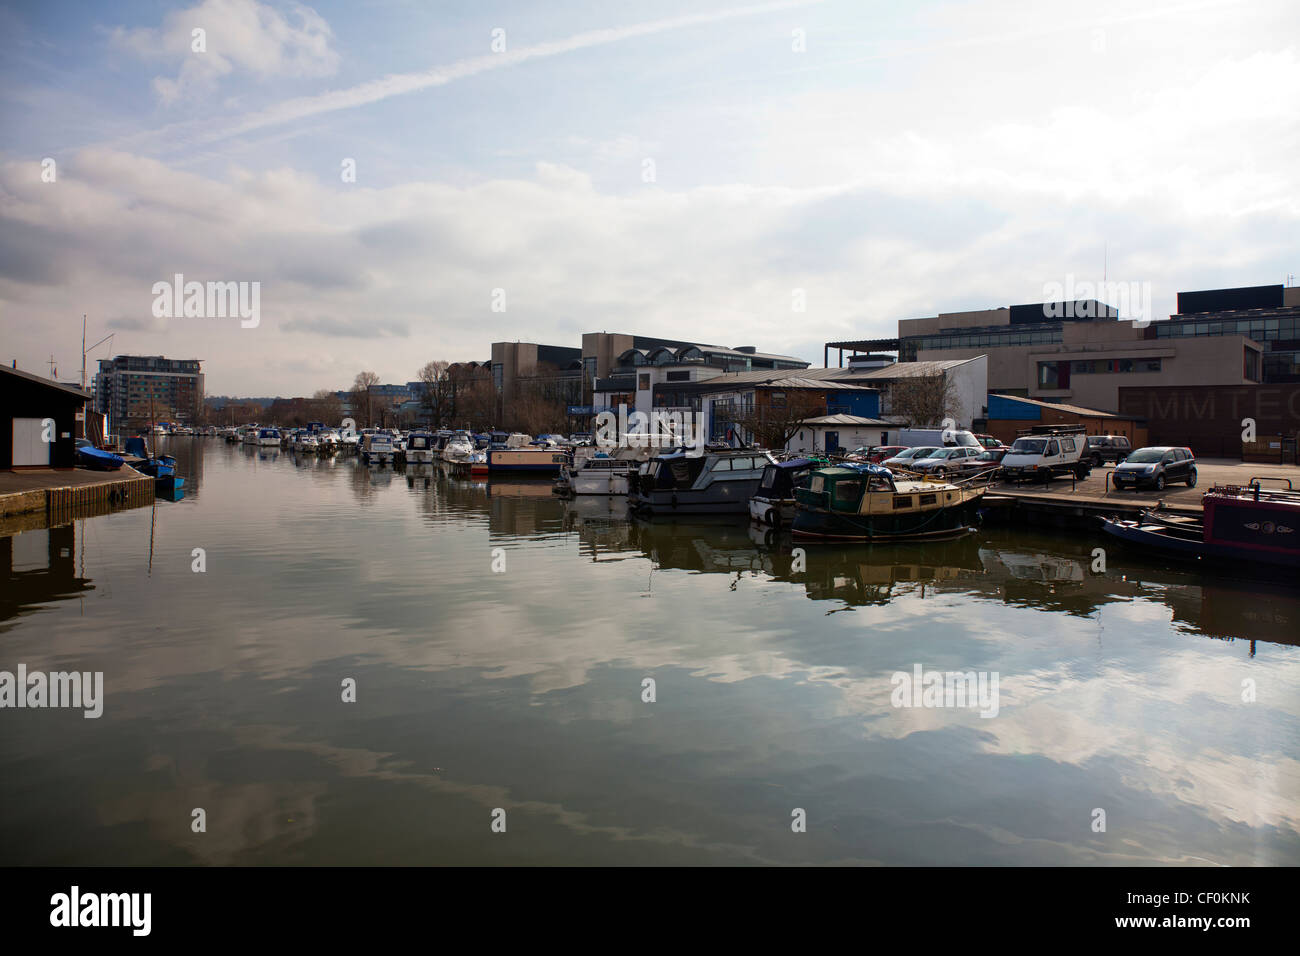 La ville de Lincoln, Lincolnshire, Angleterre Brayford Pool bateaux de plaisance amarrées, alignés en attente Banque D'Images